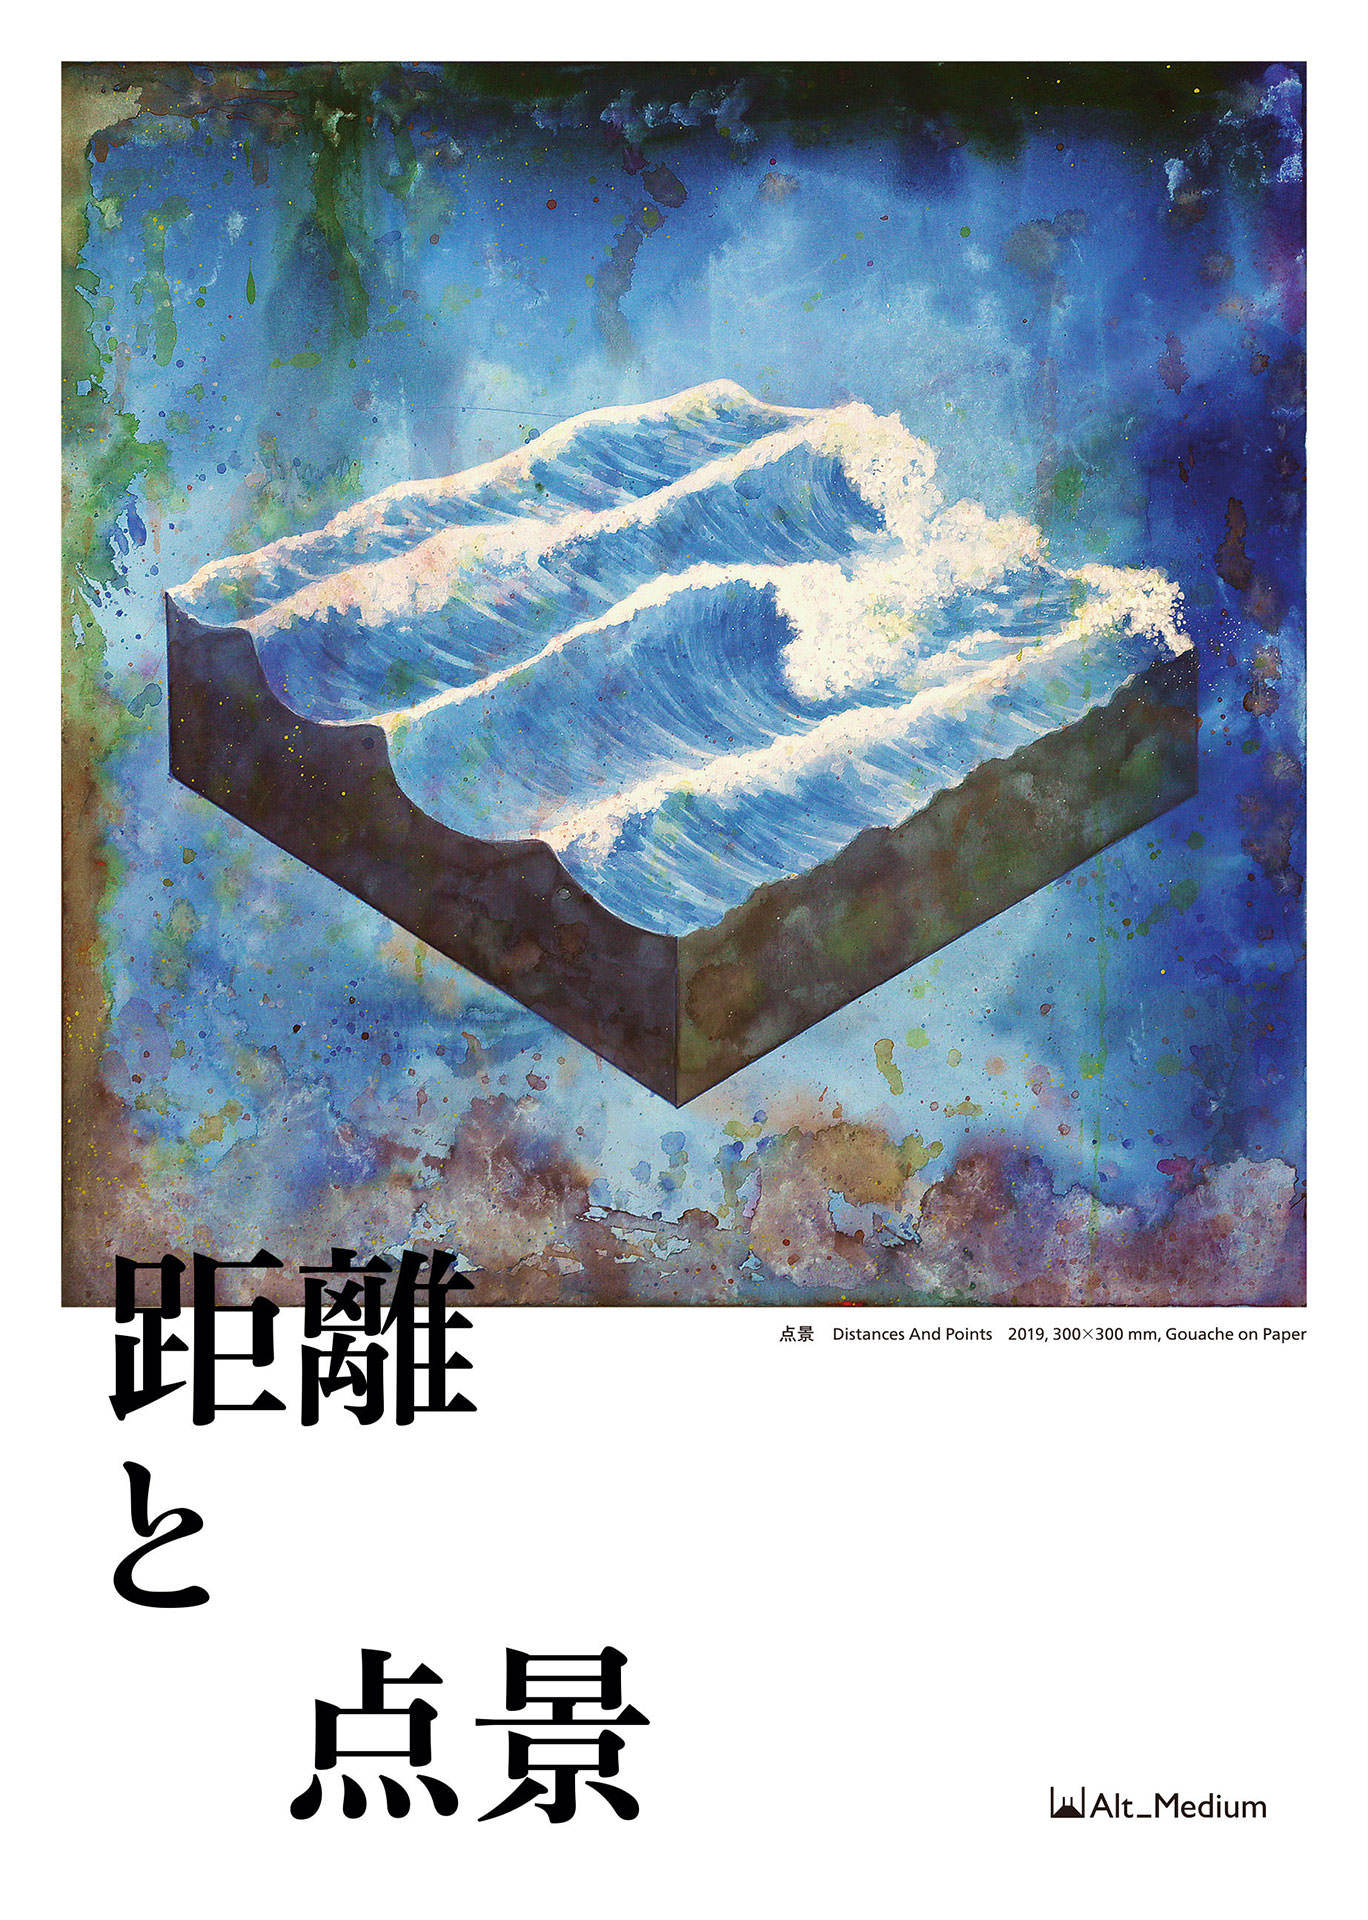 片山高志「距離と点景」 Takashi Katayama “Distances and Points” - Alt_Medium, PORT ART & DESIGN TSUYAMA